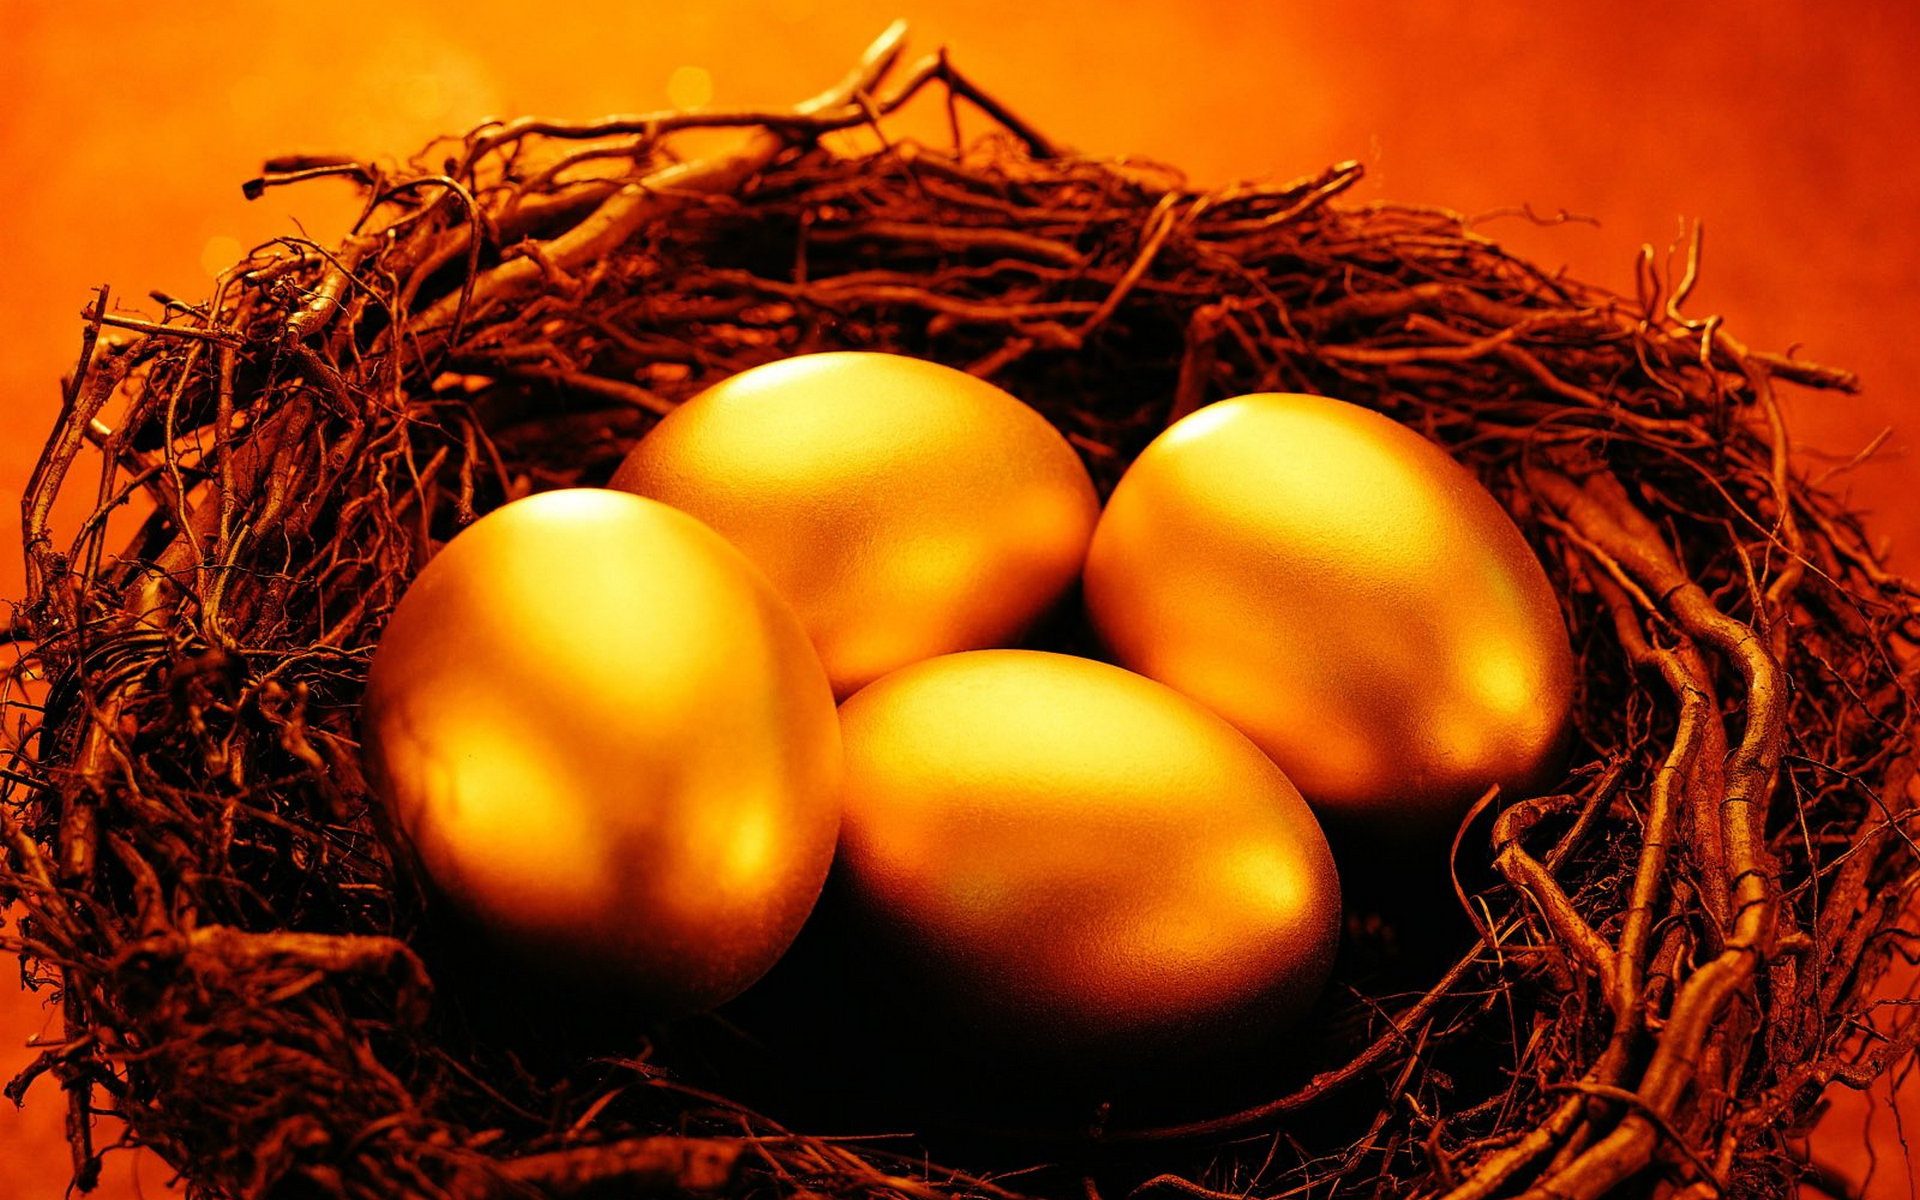 Картинка перед пасхой. Курочка несущая золотые яйца. Золотое яичко Курочка Ряба. Золотые яйца на Пасху. С наступающей Пасхой.